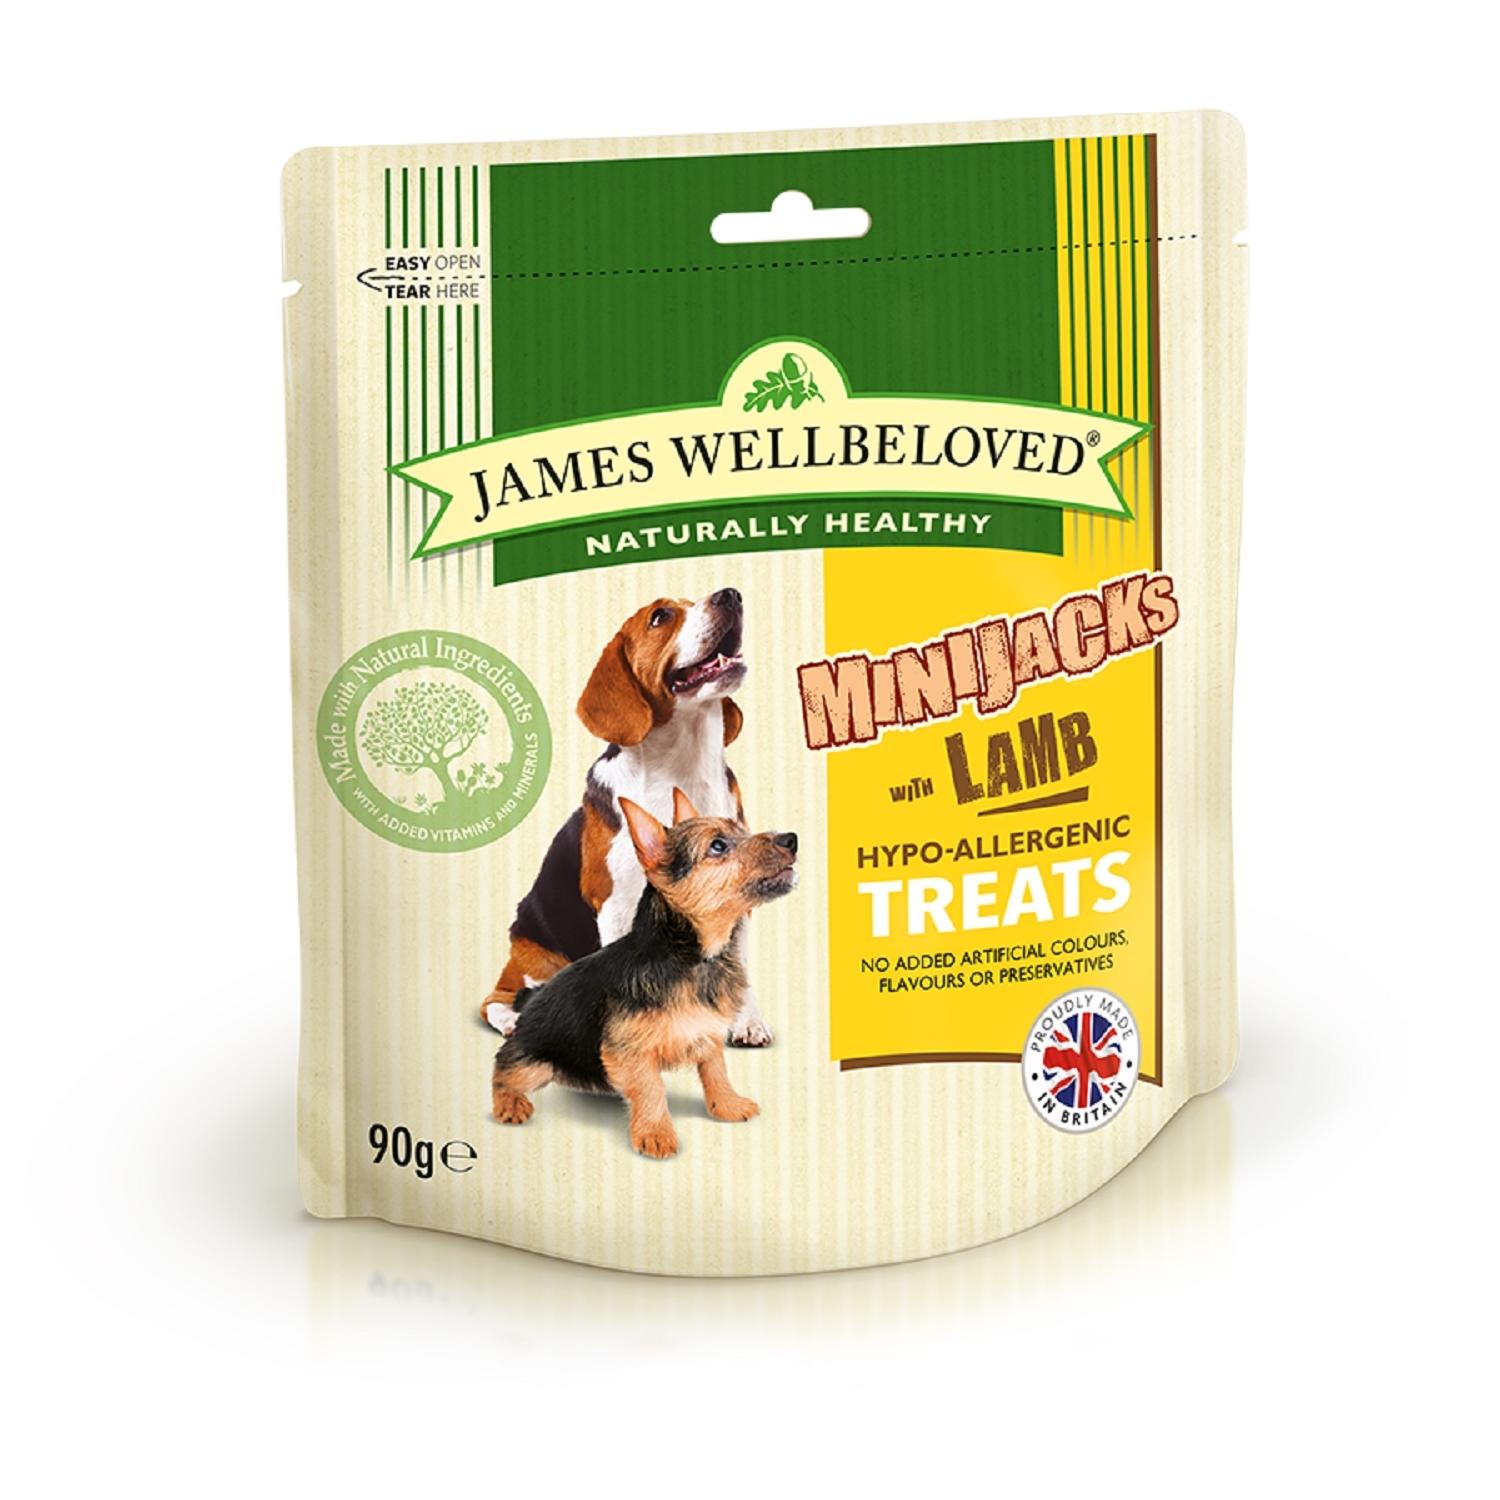 James wellbeloved mini jacks lamb